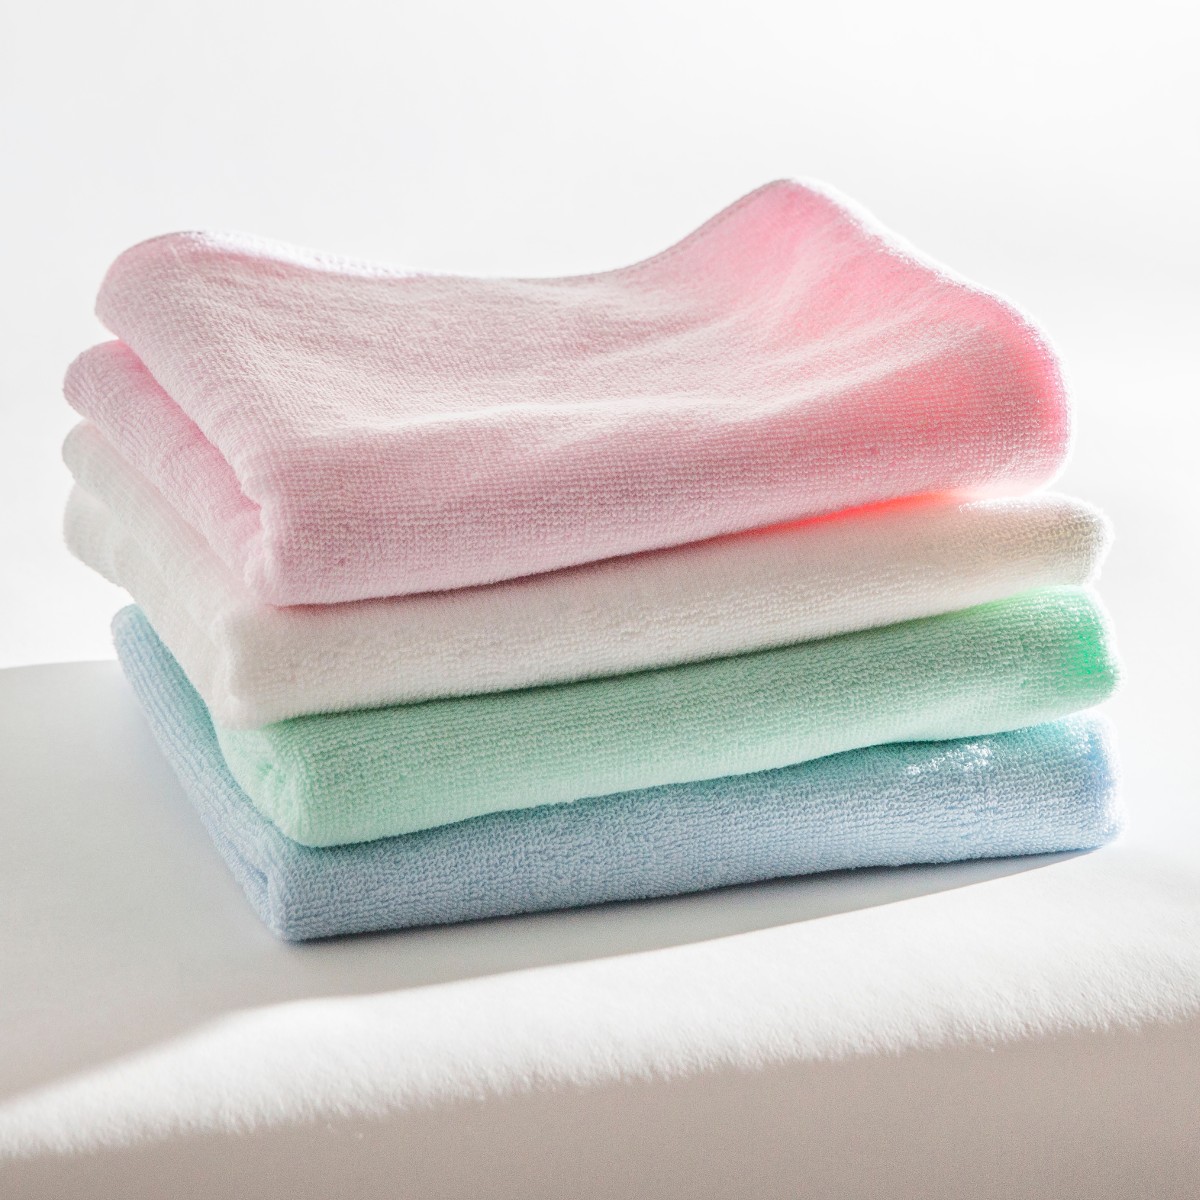 Ręczniki bawełniane czy z mikrofibry - która opcja wypada najlepiej?